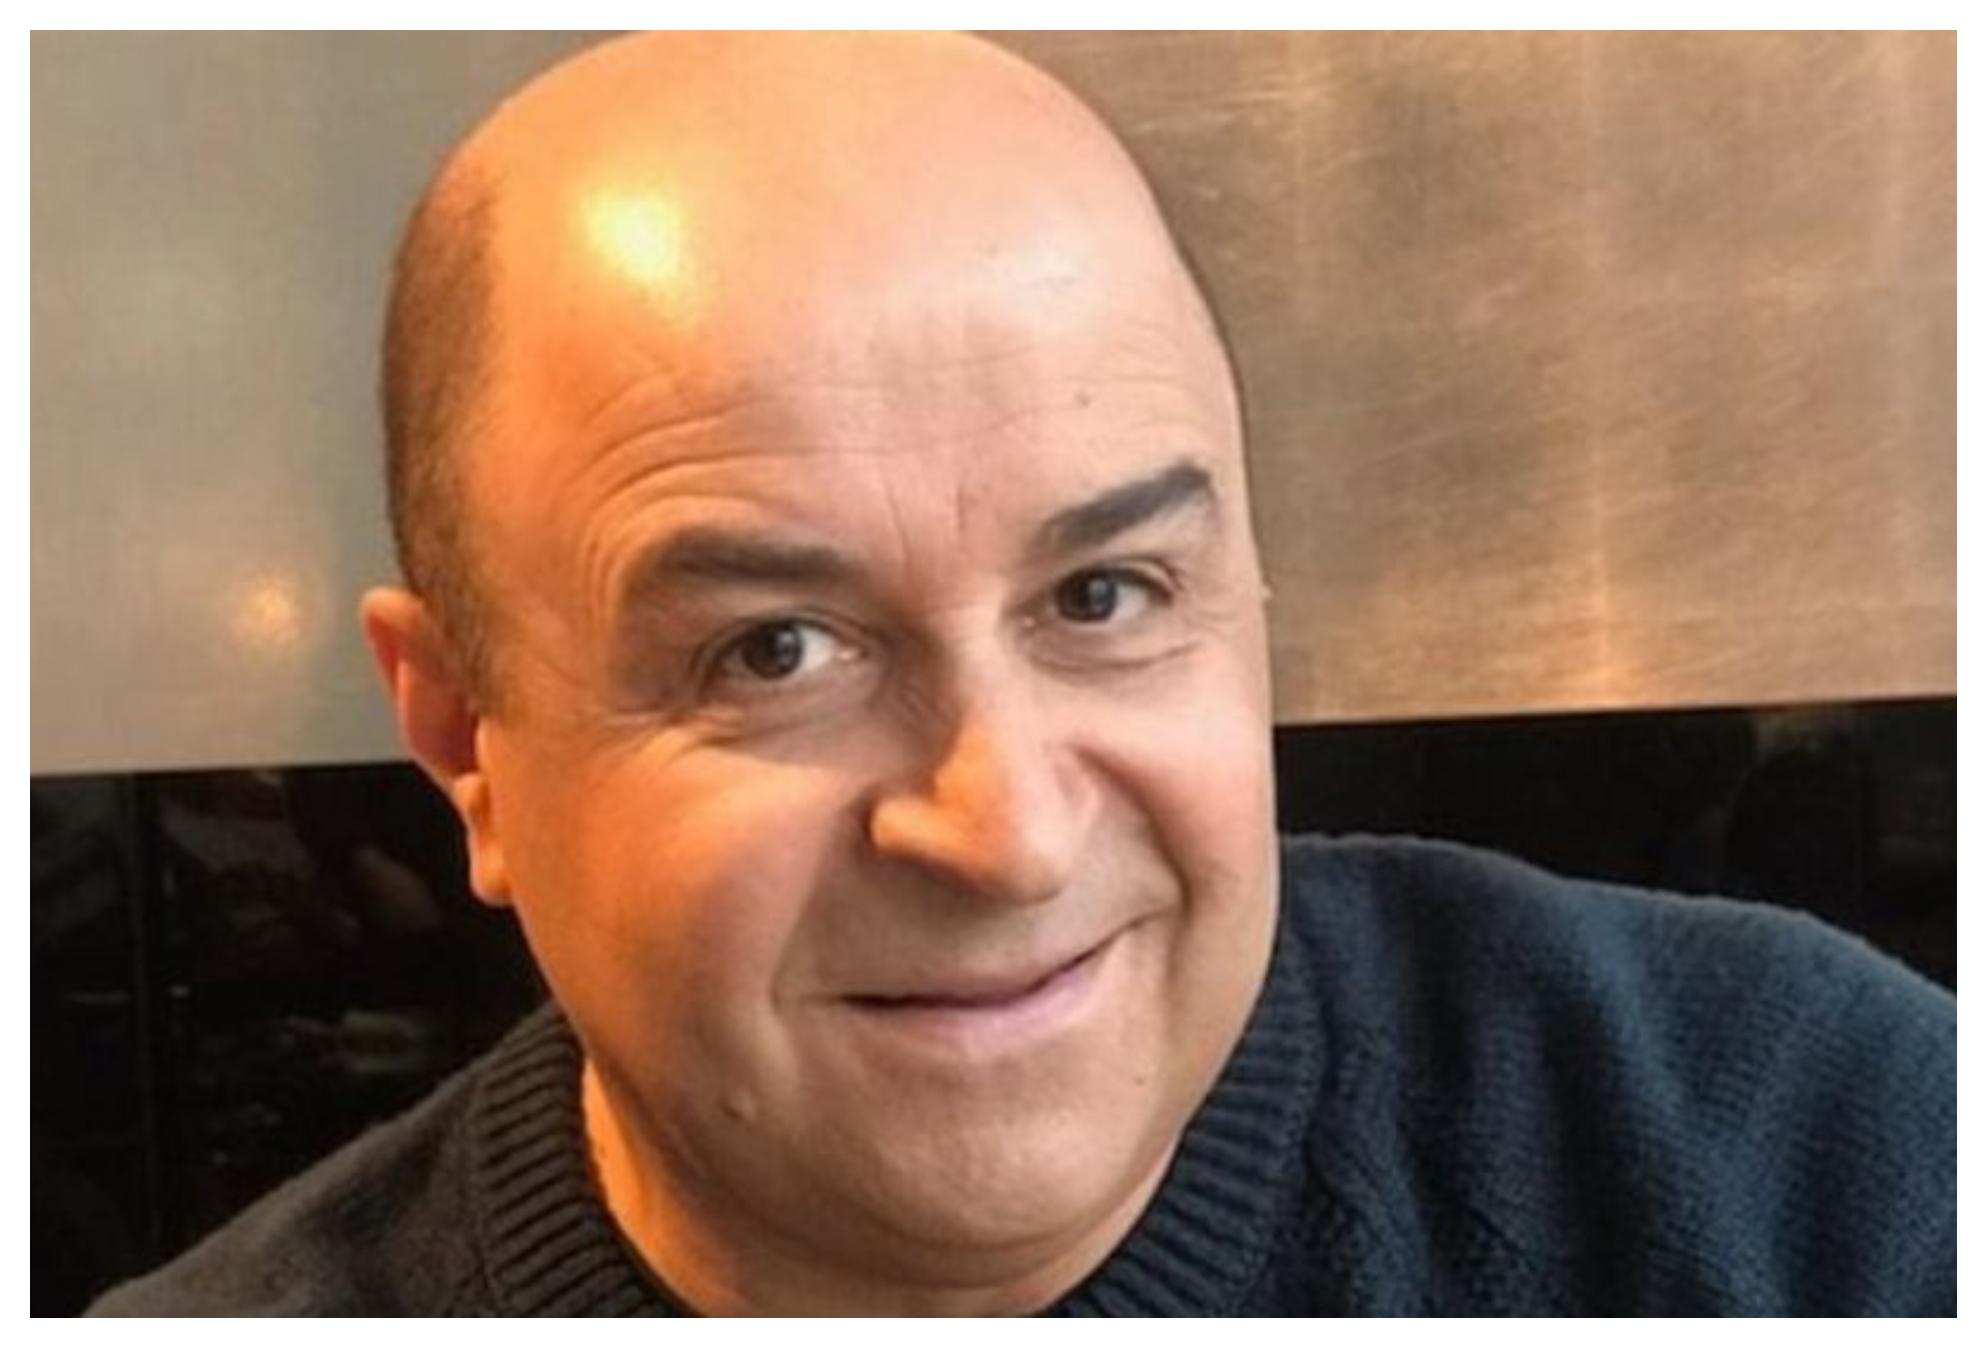 Μάρκος Σεφερλής: Ξύρισε το κεφάλι του για συμπαράσταση σε συνεργάτη του που έχει καρκίνο – “Για πάντα μαζί”